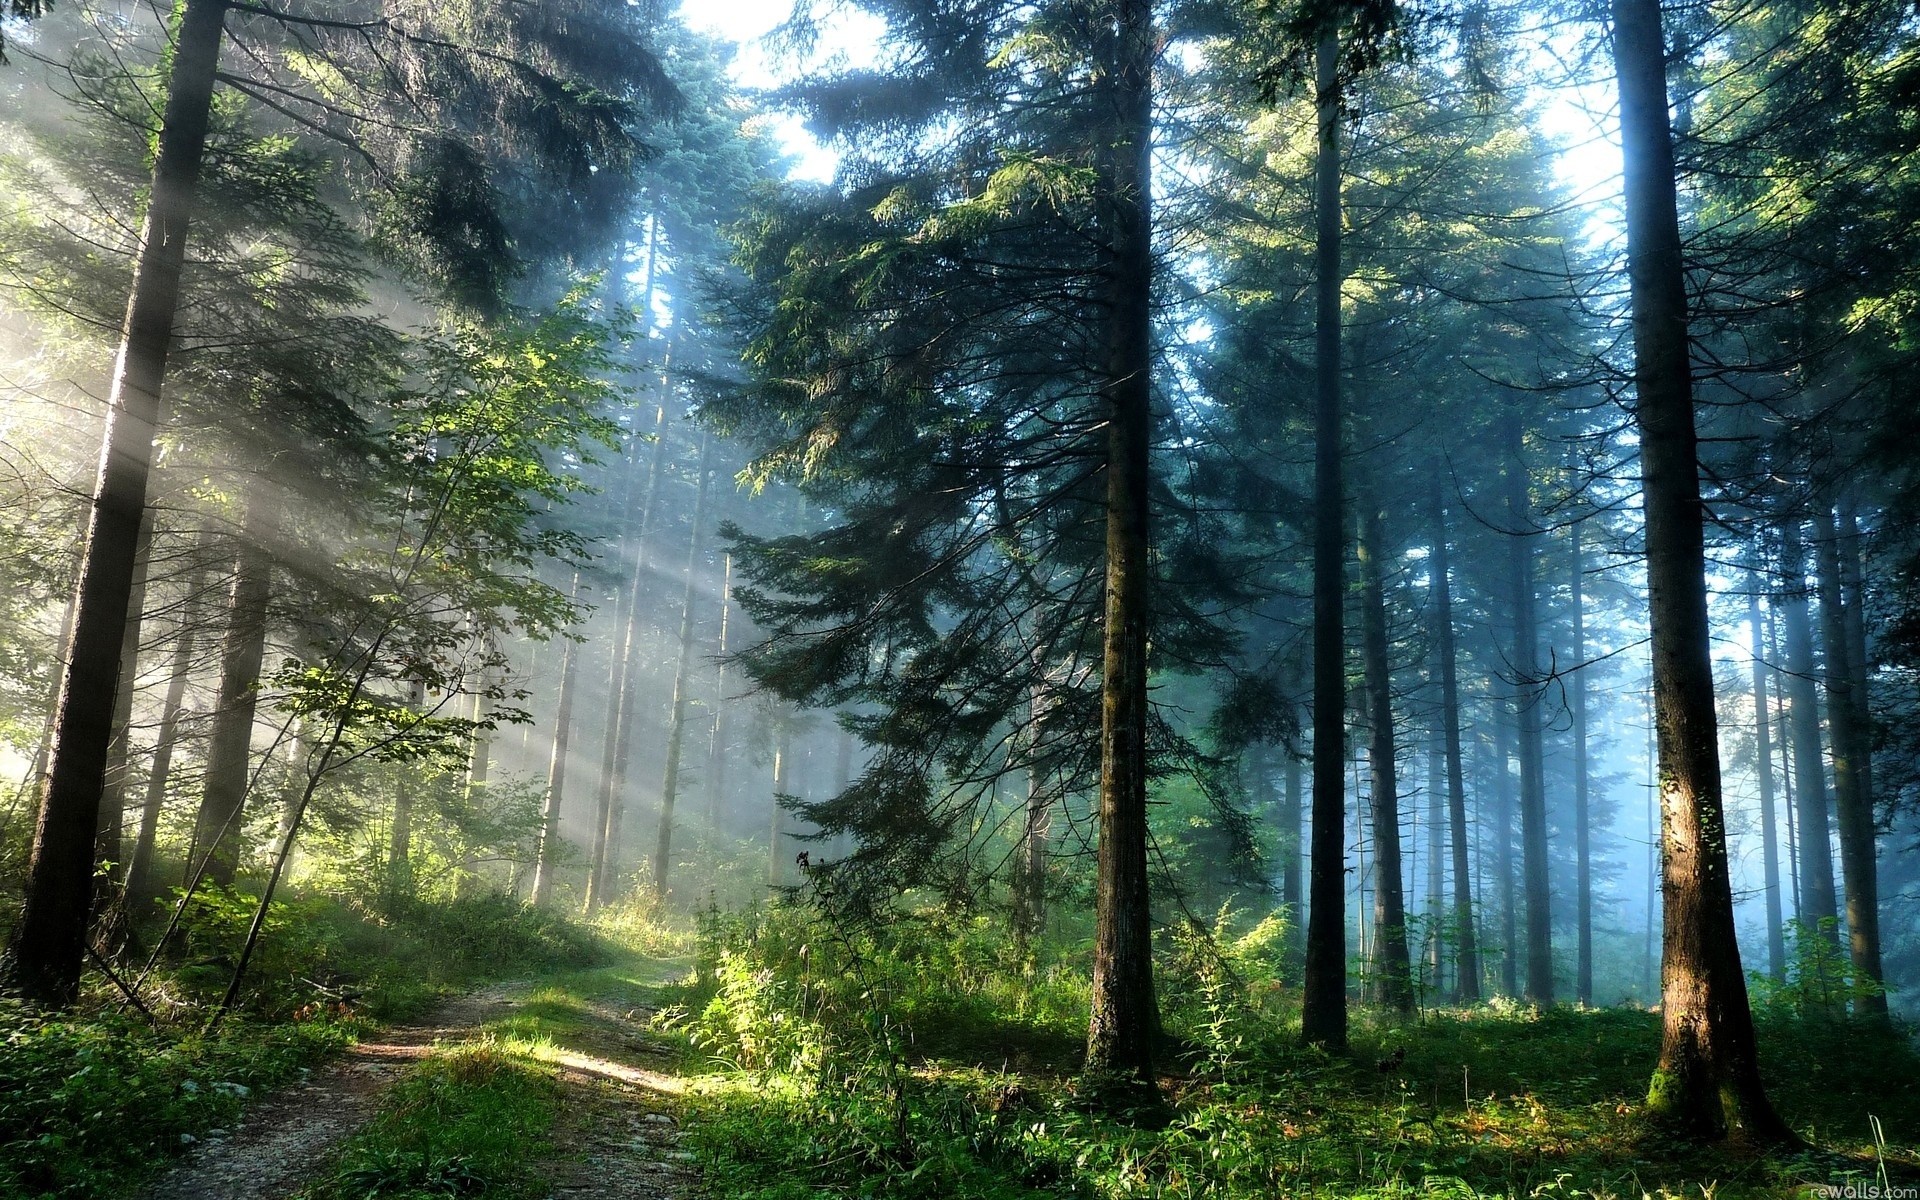 Nền ảnh rừng: Ảnh rừng thật tuyệt vời! Hãy đến và thưởng thức vẻ đẹp của những cây cối xanh mướt, những ánh sáng lung linh với những áng mây trôi qua. Cảm giác yên bình trong thiên nhiên sẽ khiến bạn quên đi mọi căng thẳng trong cuộc sống. Đừng chần chừ mà hãy nhanh tay xem ảnh rừng này ngay thôi.